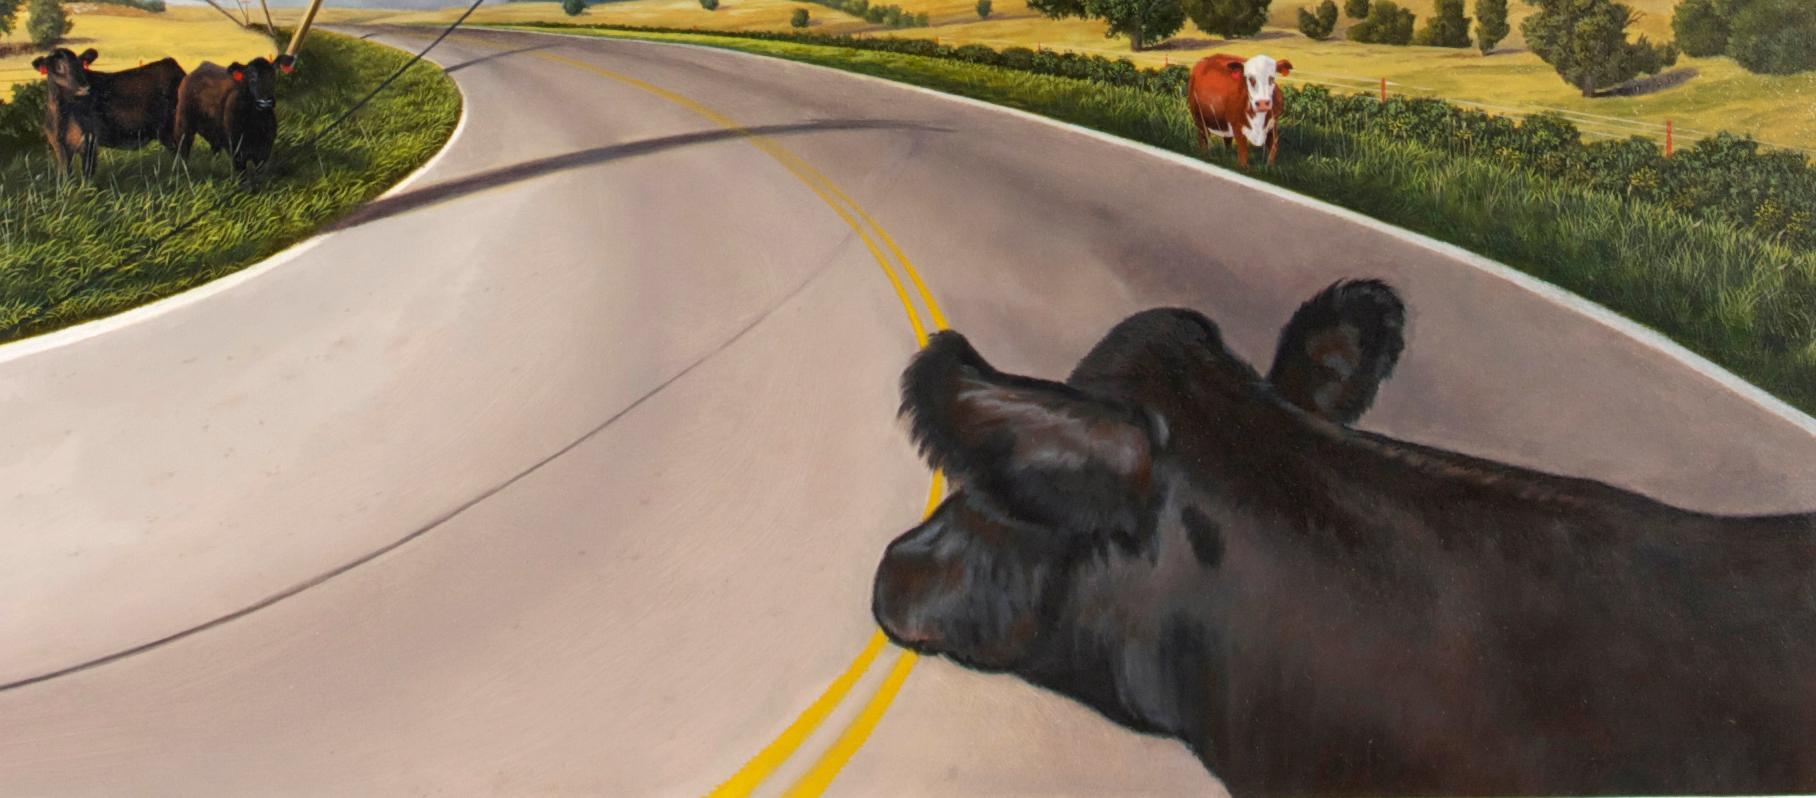 Gust Front, realistisches Landschafts-Ölgemälde Americana, 2018 (Amerikanischer Realismus), Painting, von Karl Hartman